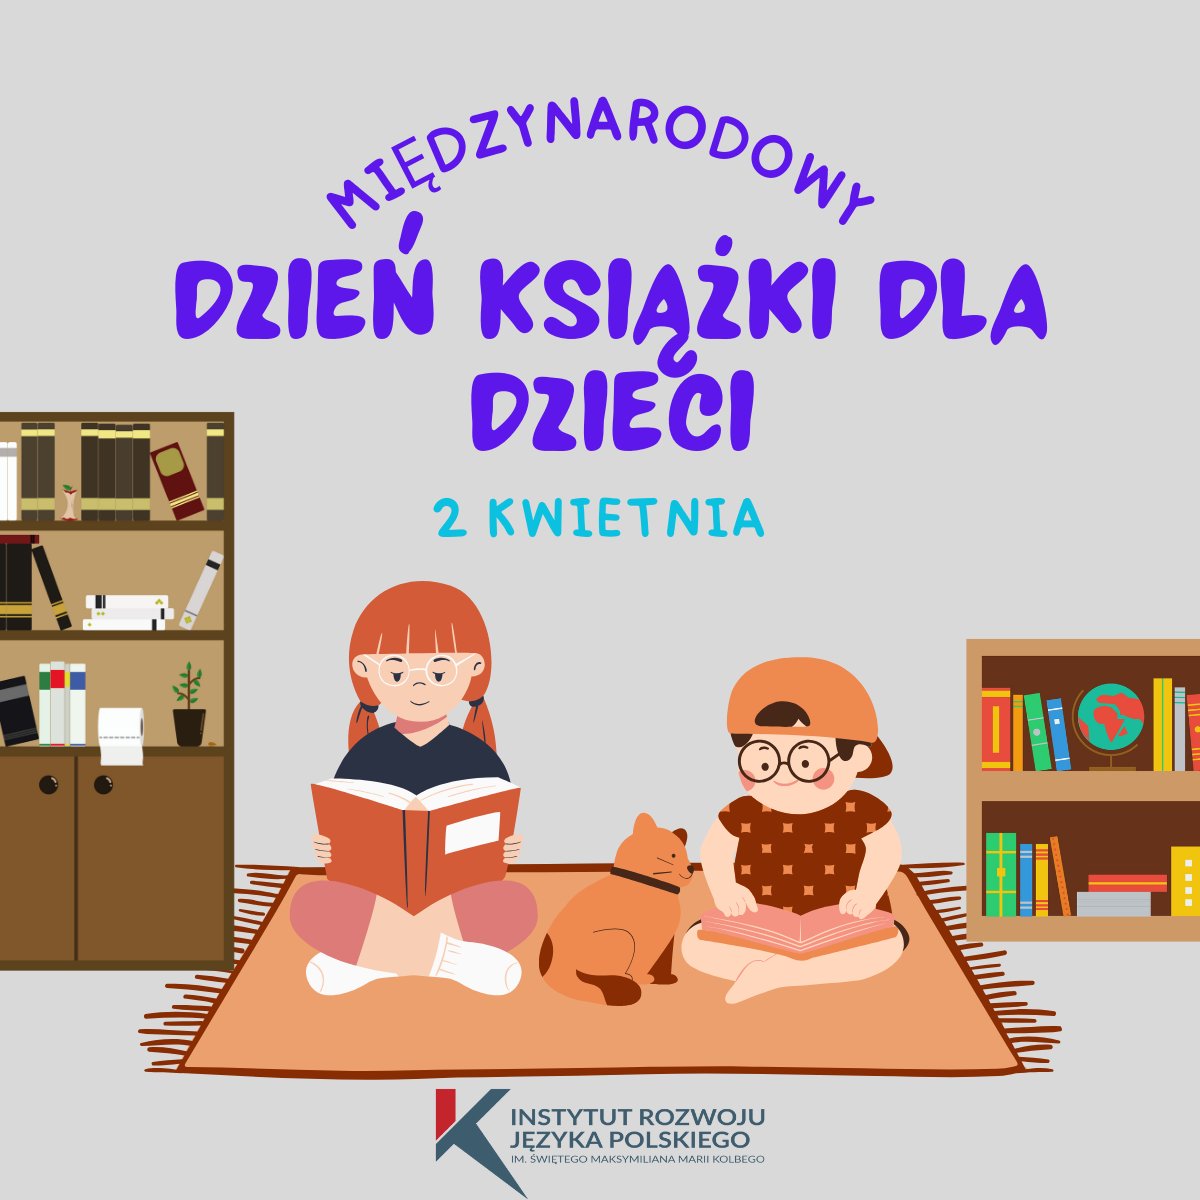 📚🌟 Świętujemy Międzynarodowy Dzień Książki dla Dzieci! Niech to wspaniałe święto będzie pretekstem do promowania czytelnictwa i rozwijania miłości do książek u najmłodszych!
#MiędzynarodowyDzieńKsiążkiDlaDzieci #KsiążkiDlaDzieci #łączynasjęzykpolski